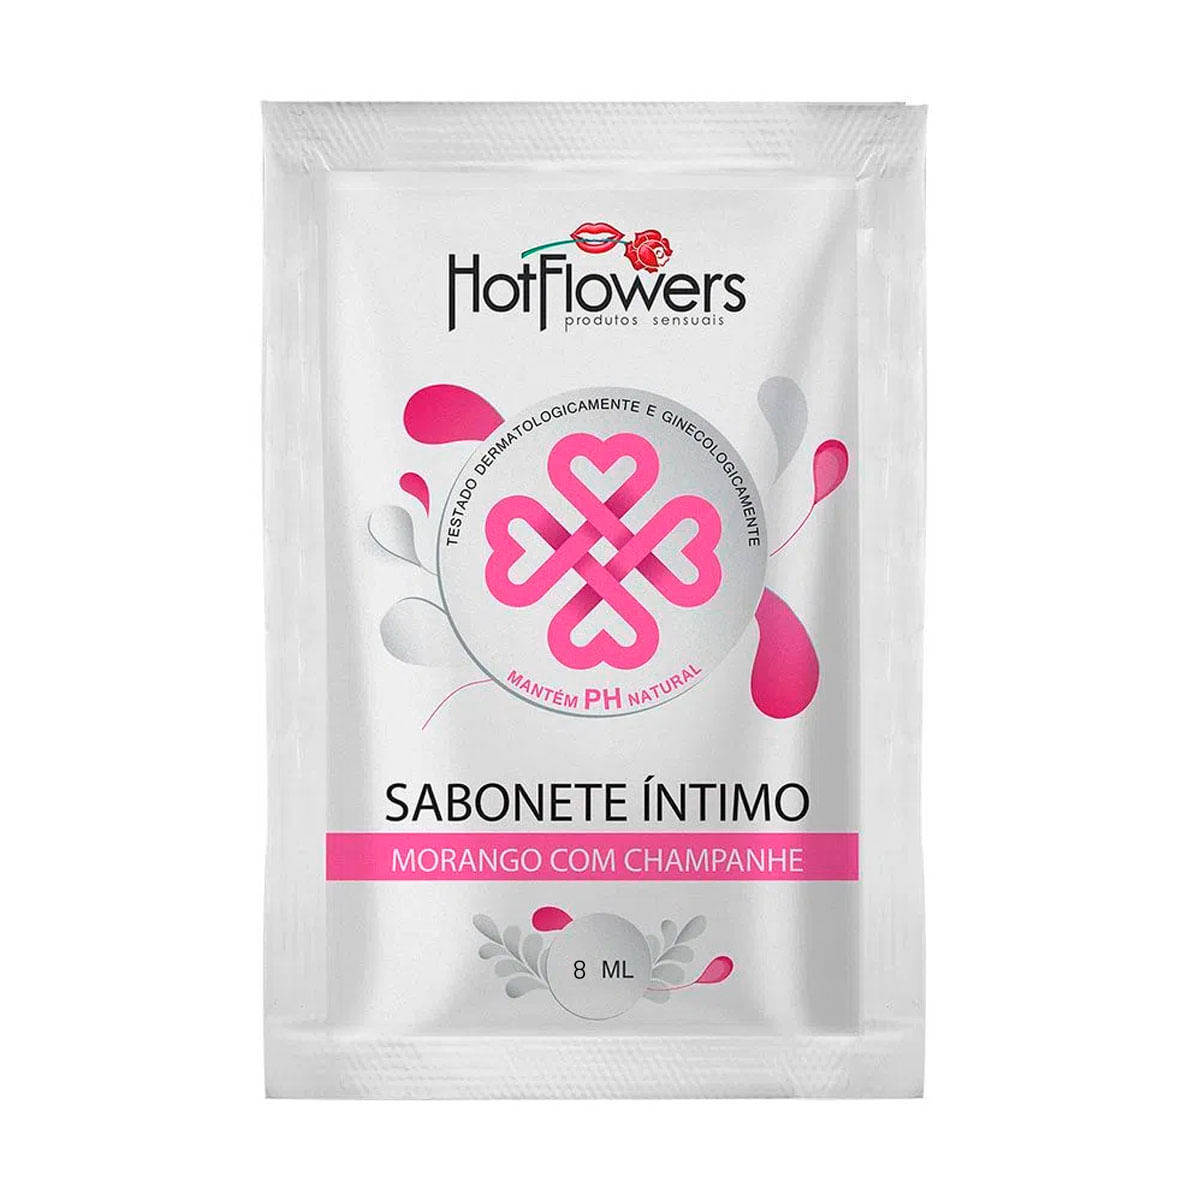 Sabonete Íntimo Morango com Champanhe sachê 8ml Hot Flowers - Miess